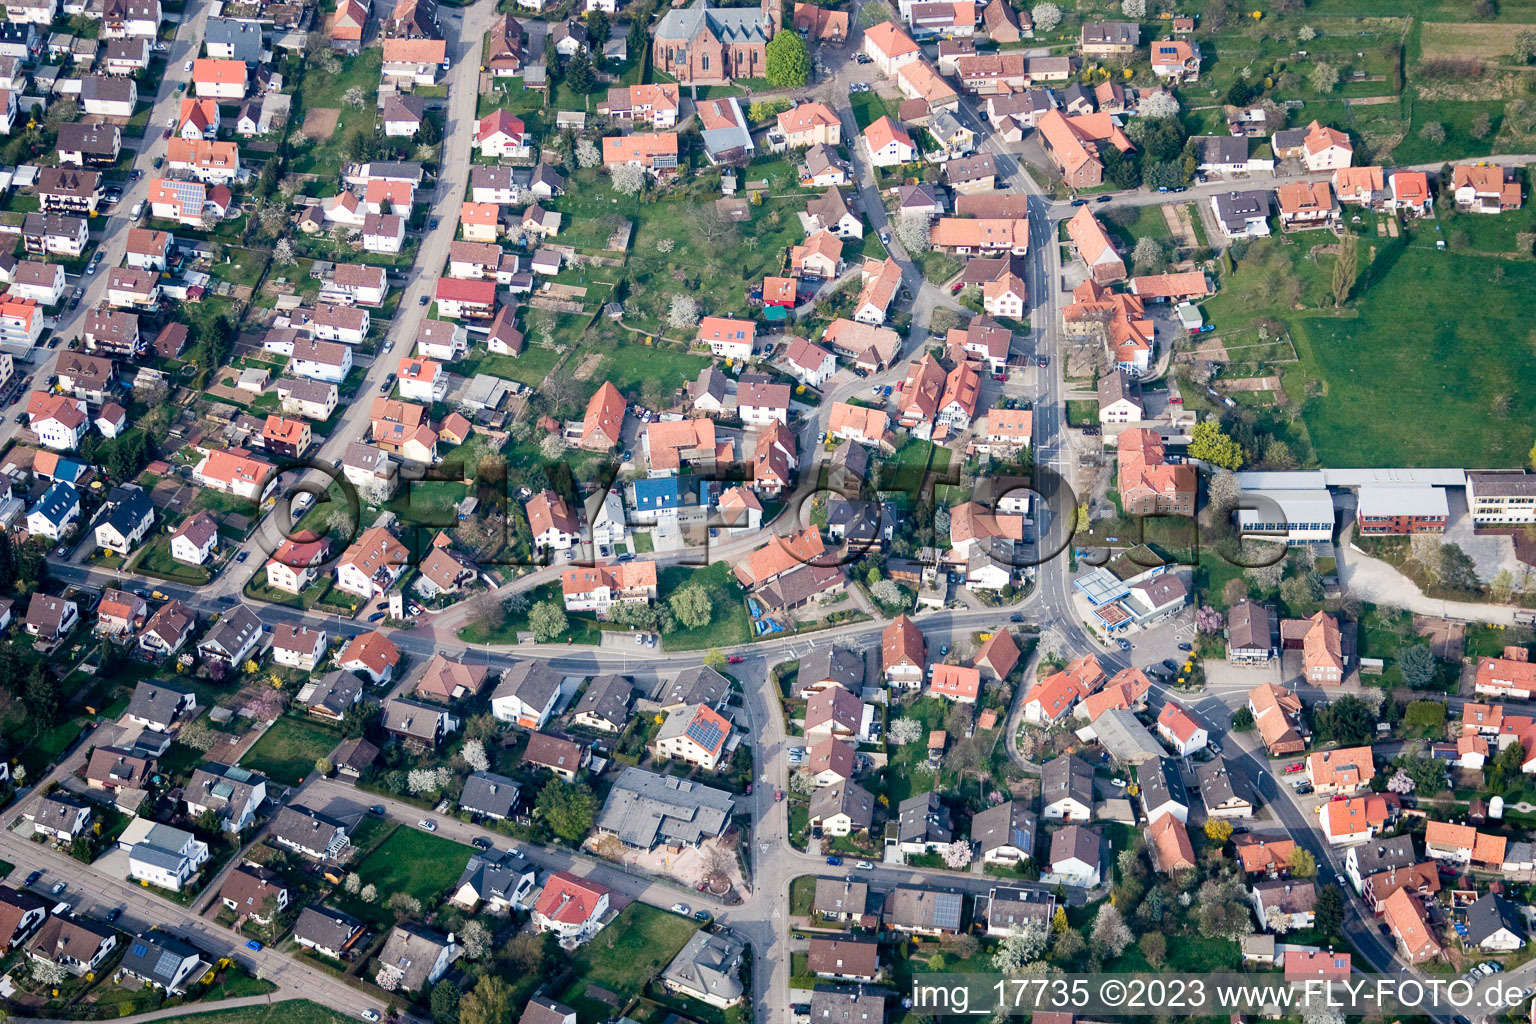 Ortsteil Schöllbronn in Ettlingen im Bundesland Baden-Württemberg, Deutschland von einer Drohne aus